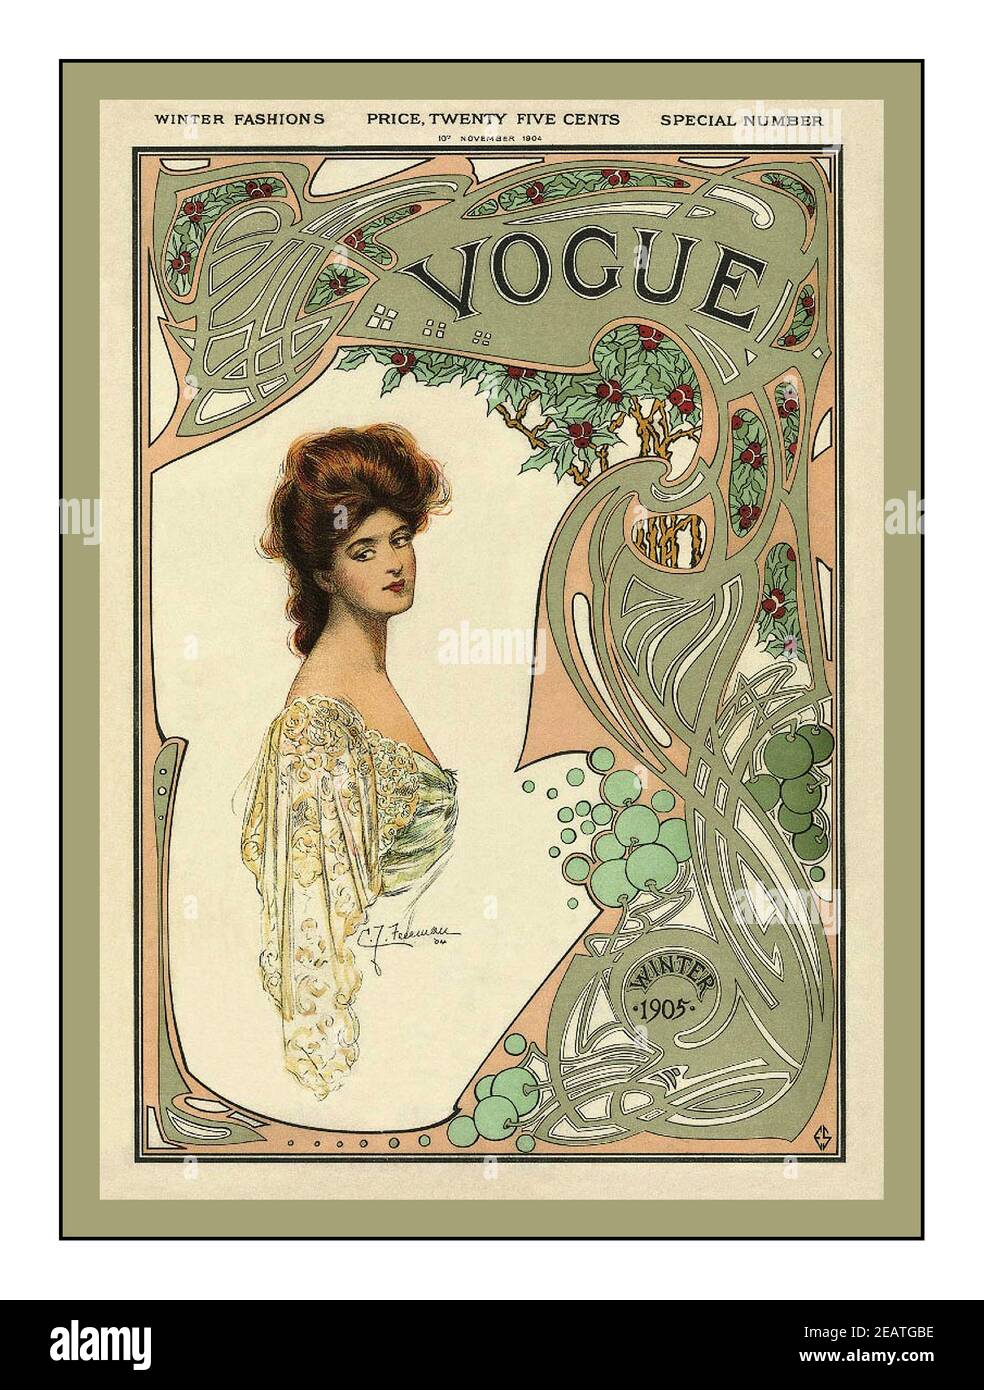 Vintage 1900's Vogue copertina anteriore 1904 Fashions invernale prezzo di copertura Venticinque centesimi Foto Stock